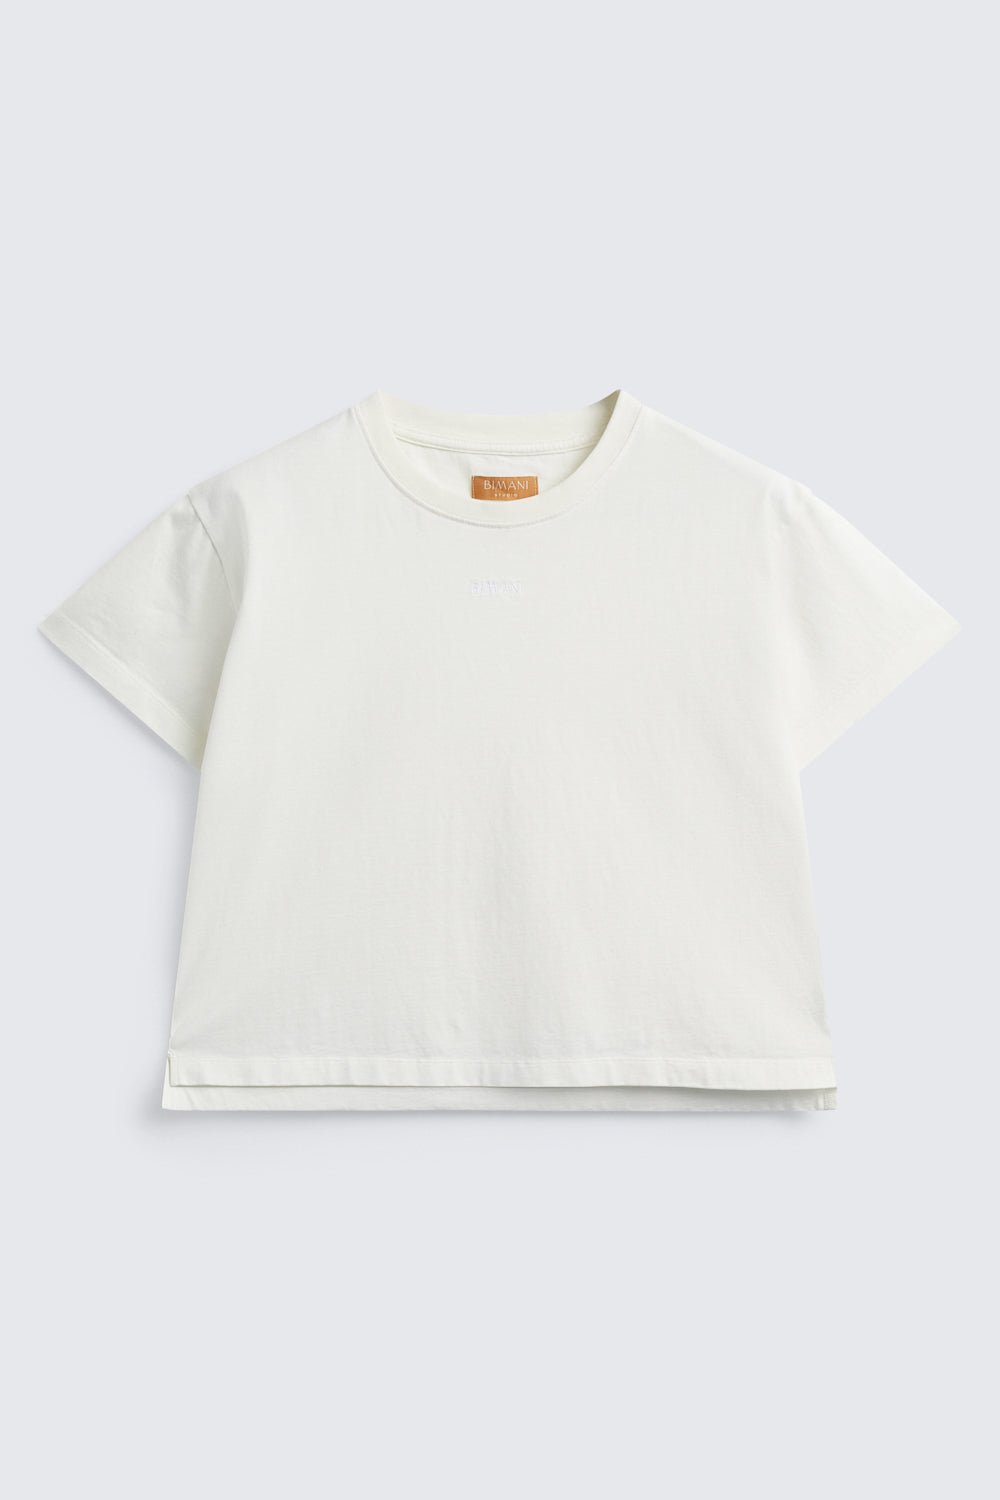 Camiseta ASPEN White - BIMANI